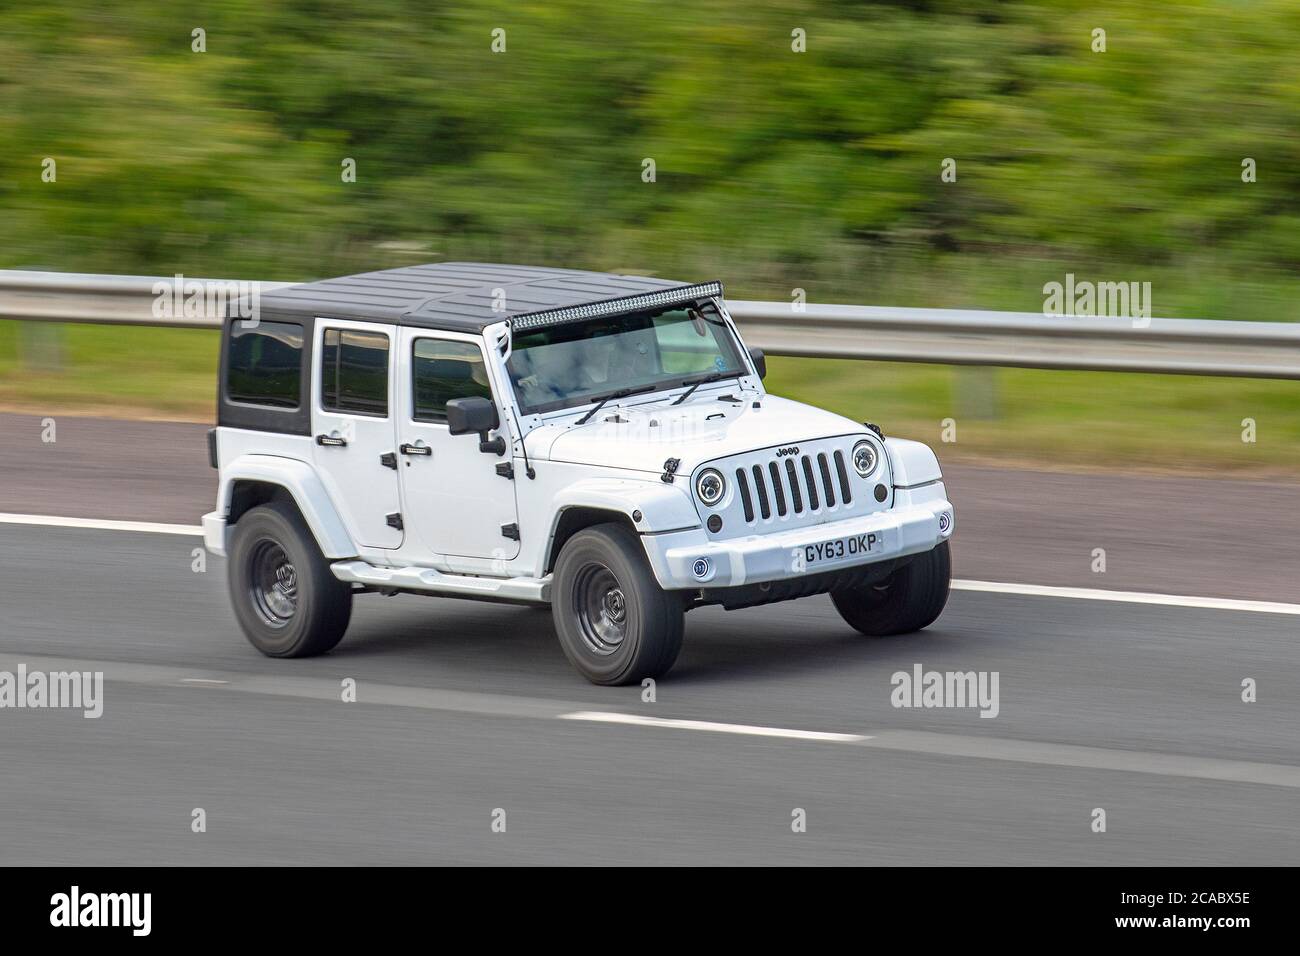 2013 White Jeep Wrangler Sahara UN-Ltd CR; Fahrzeugverkehr Fahrzeuge bewegen, Autos fahren Fahrzeug auf britischen Straßen, Motoren, Fahren auf der Autobahn M6-Netz. Stockfoto